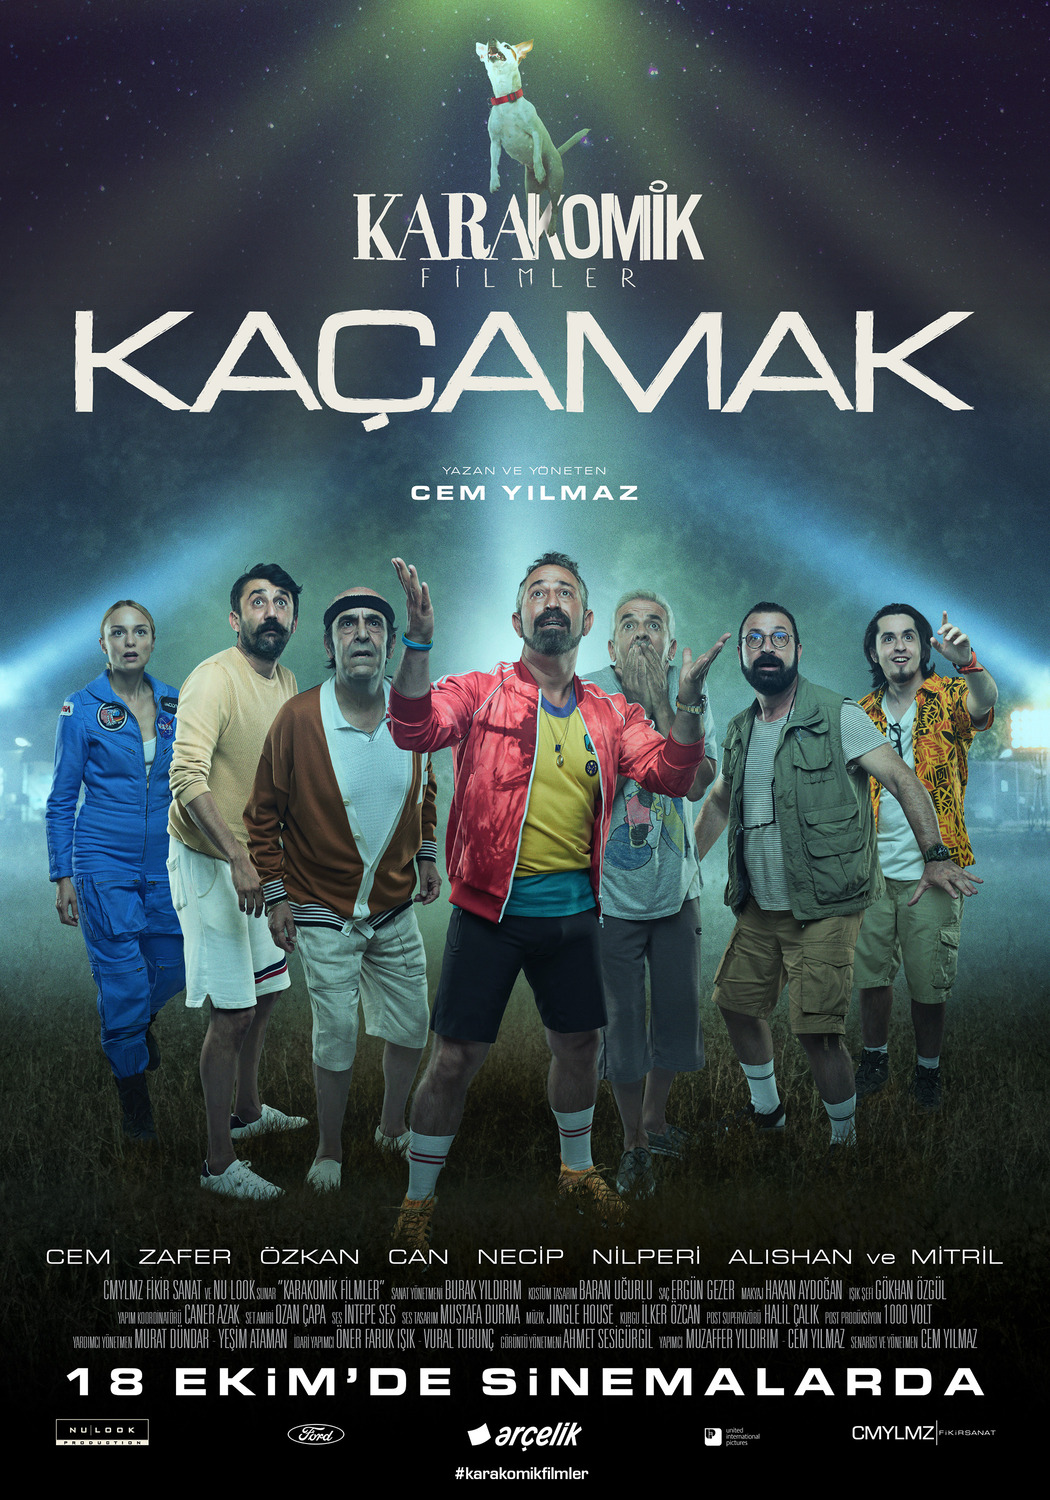 Extra Large Movie Poster Image for Karakomik Filmler (#7 of 9)